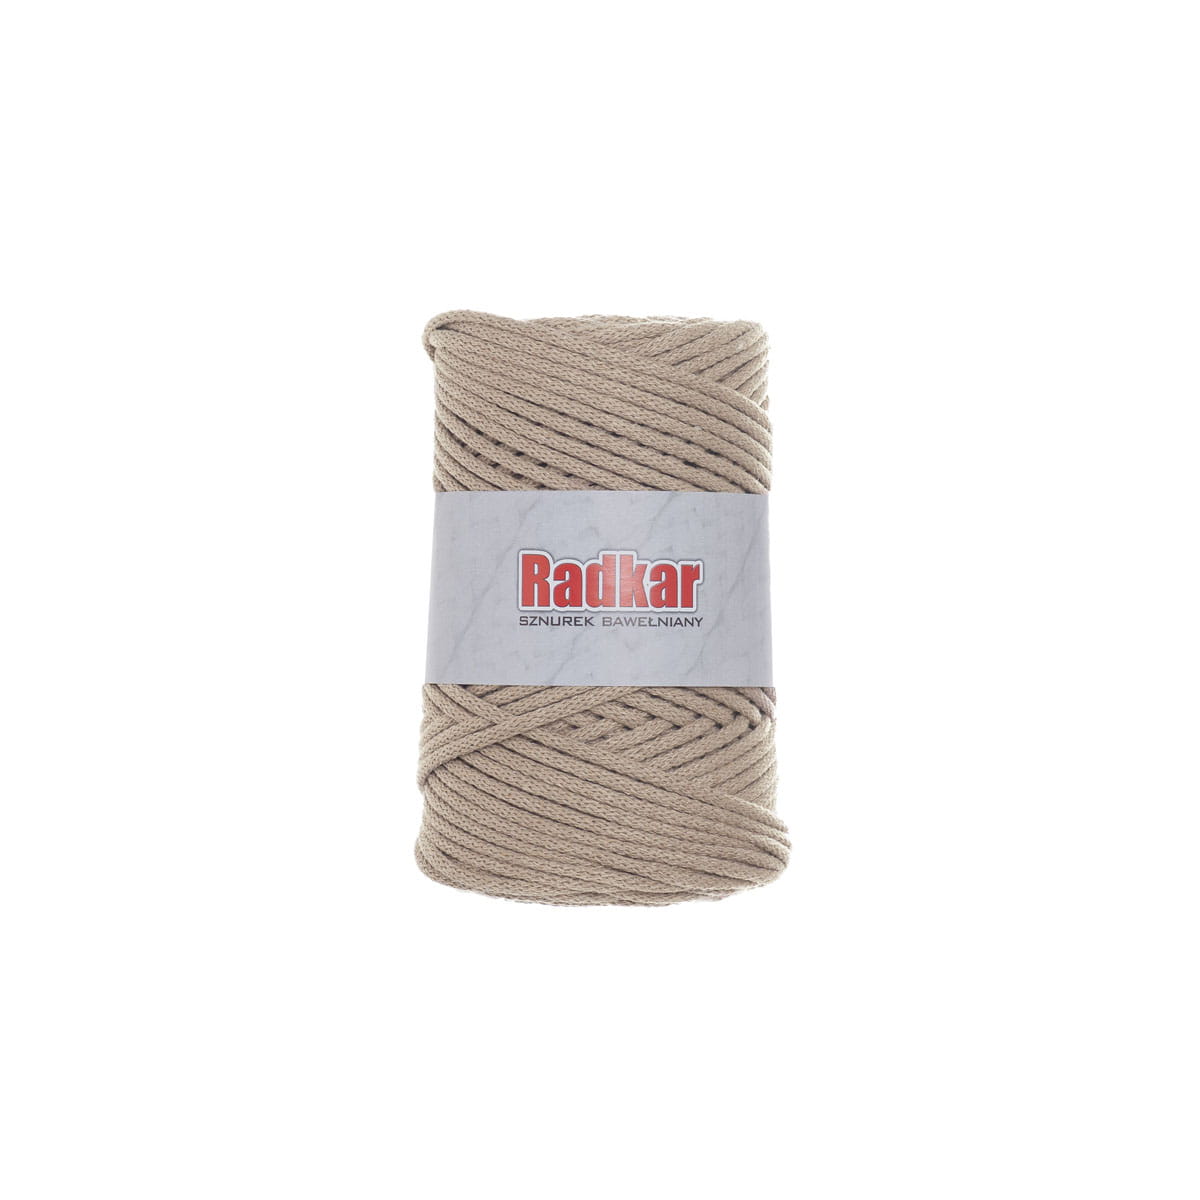 Beige 710 3mm cotton cord